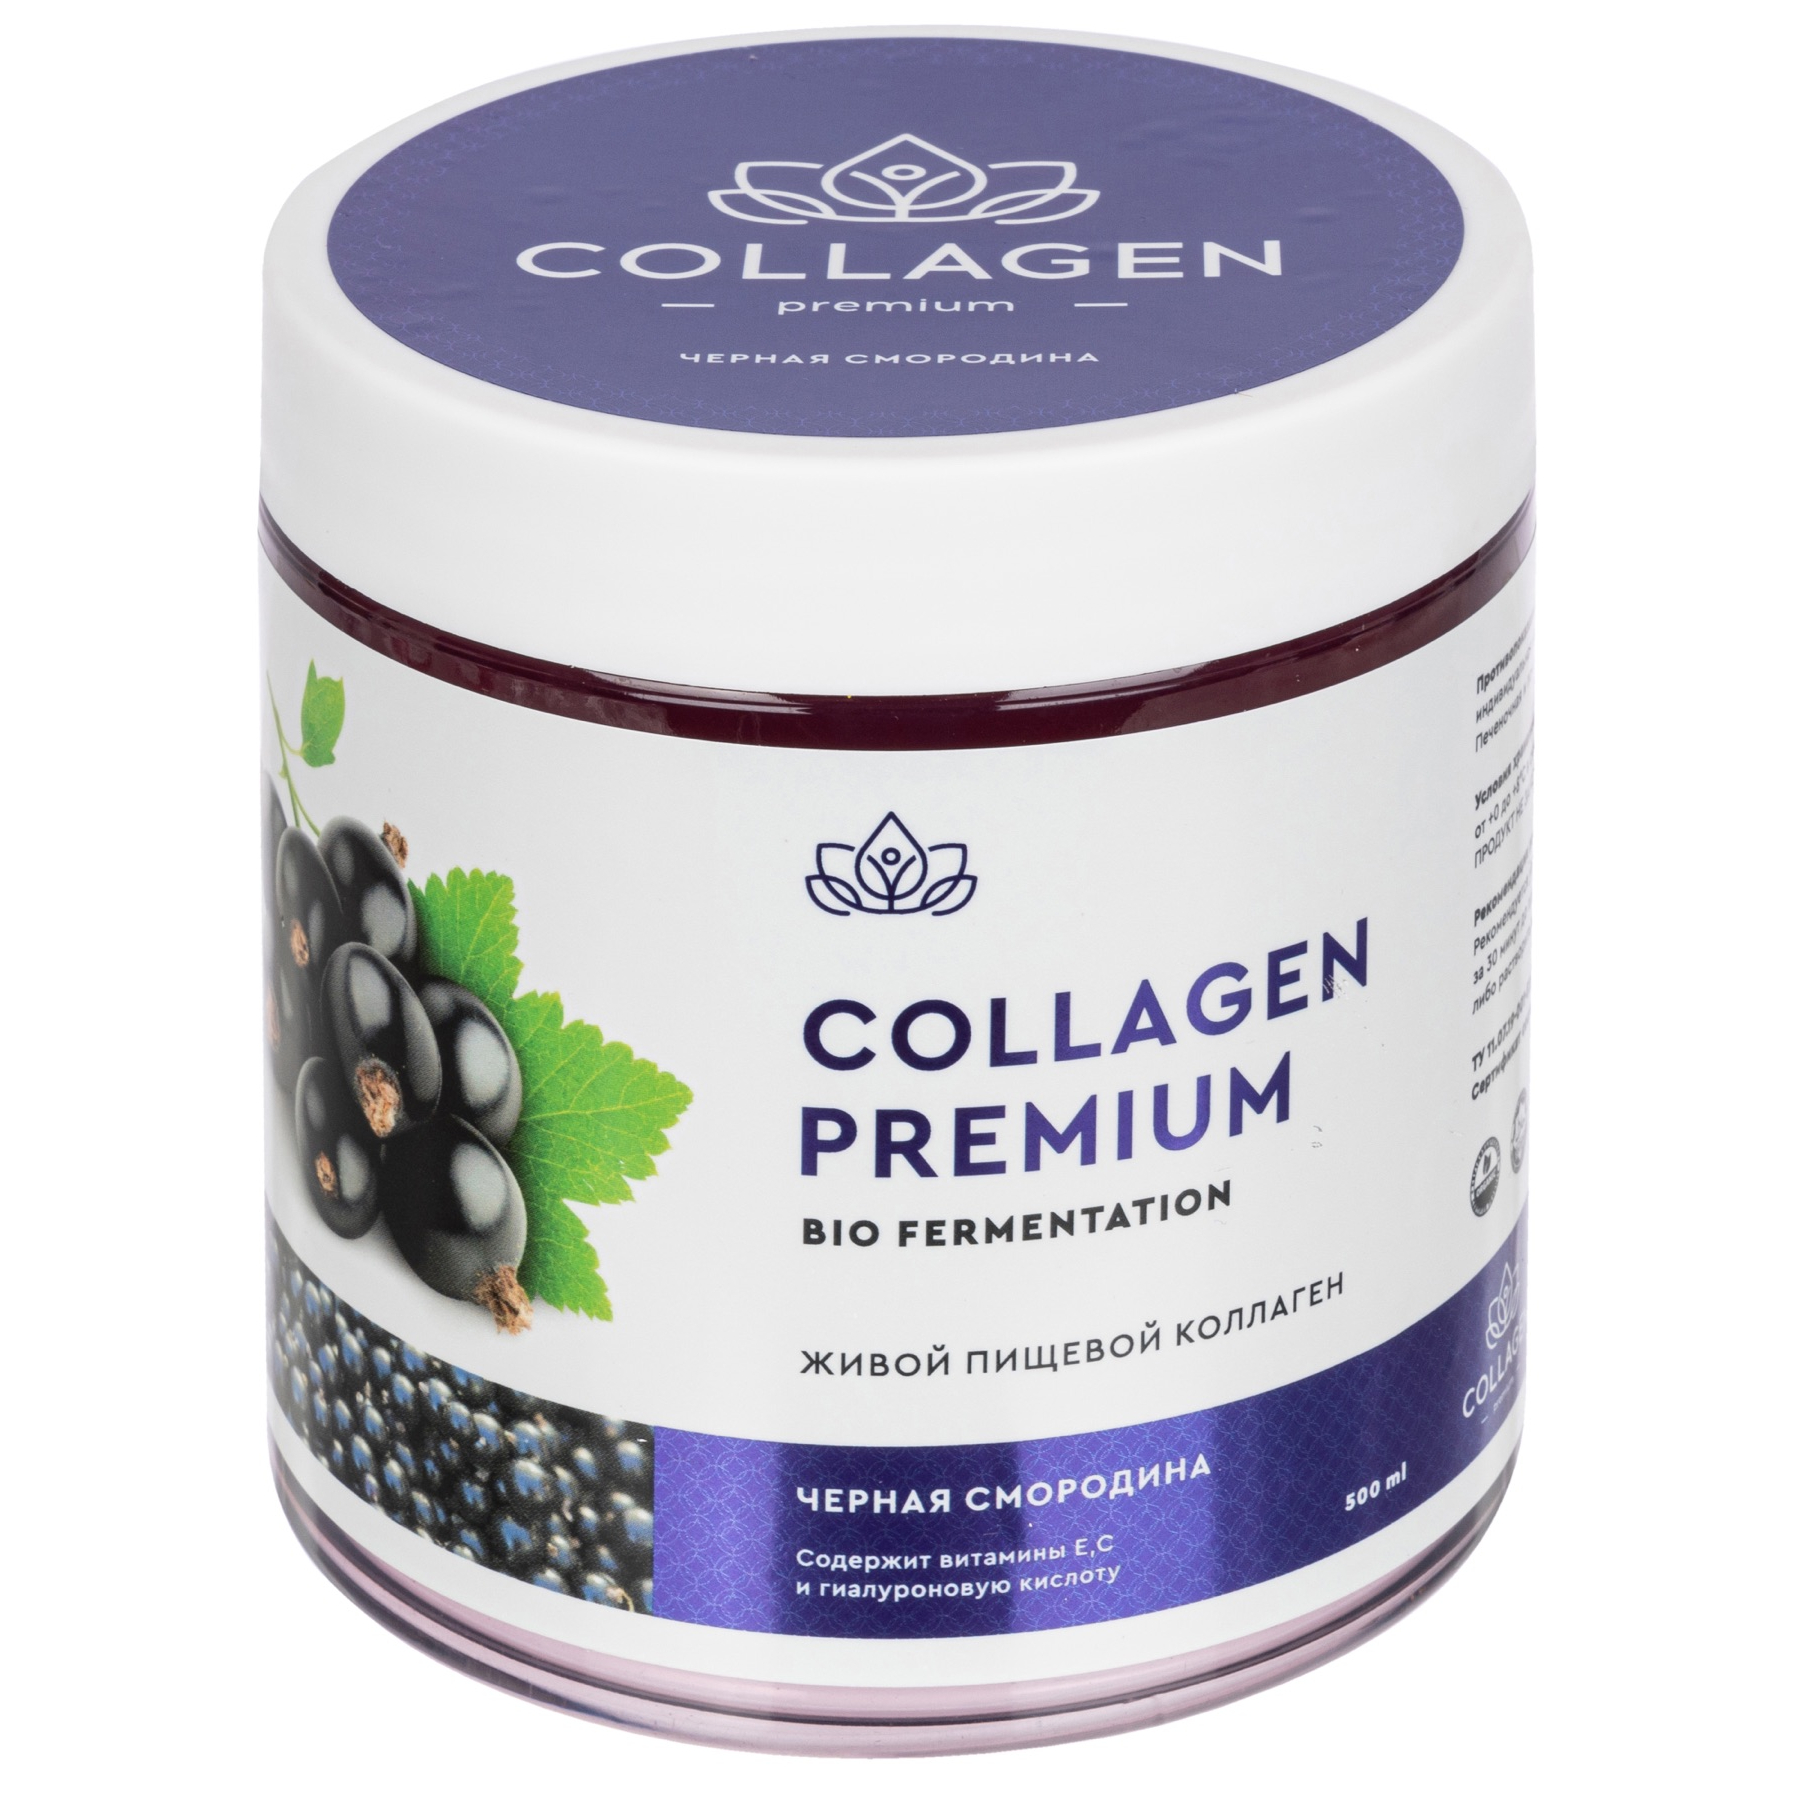 Коллаген Collagen Premium жевательный пищевой желе черная смородина 500г